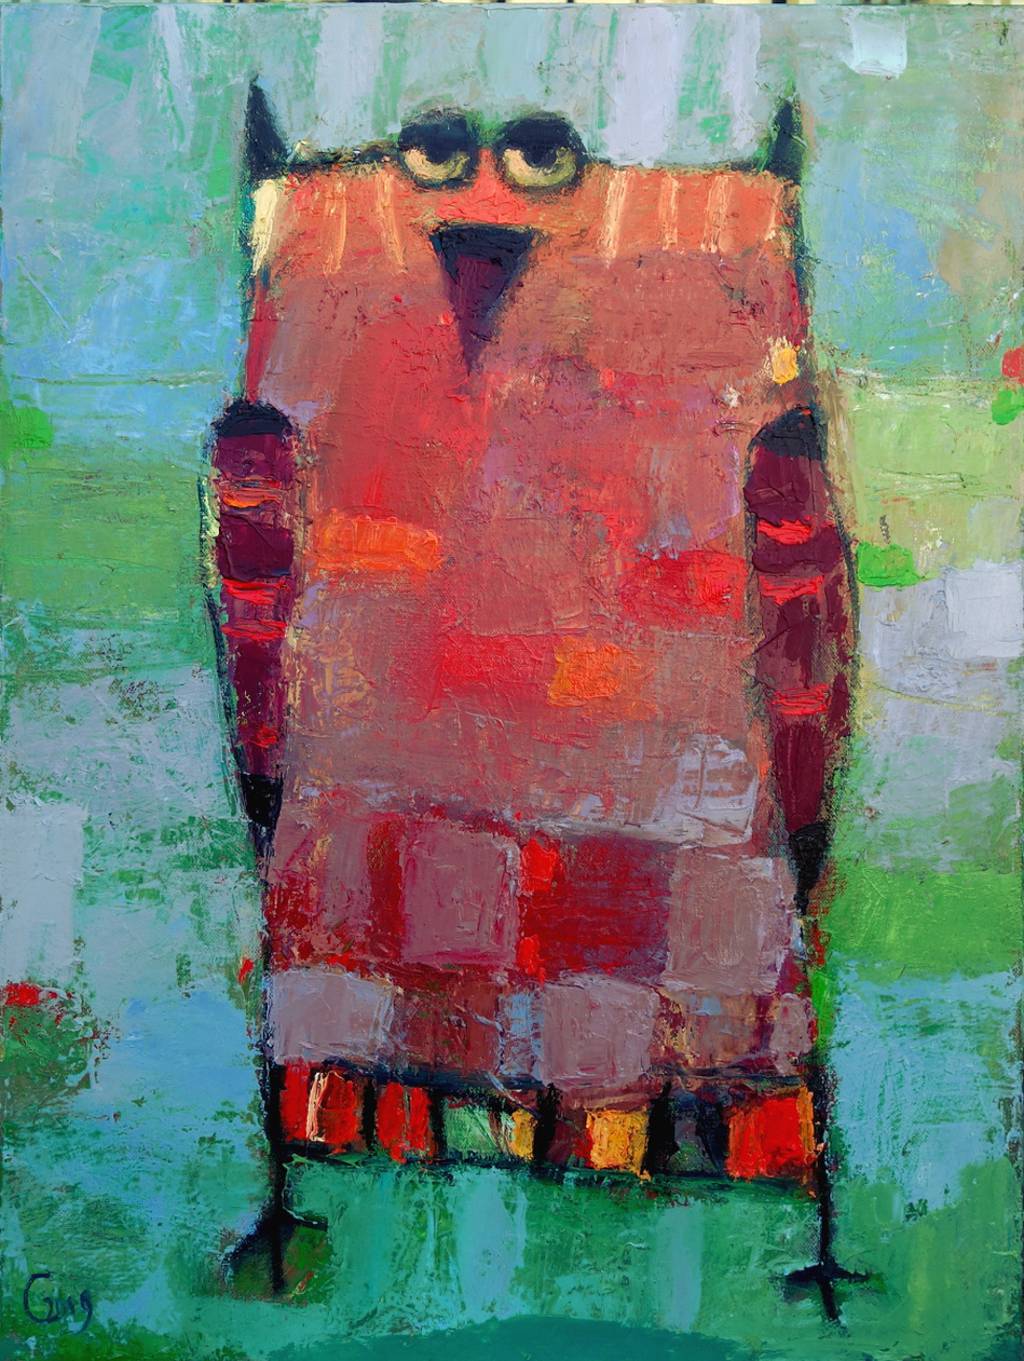 Owl 2, 61x46cm., oil on canvas, 2019